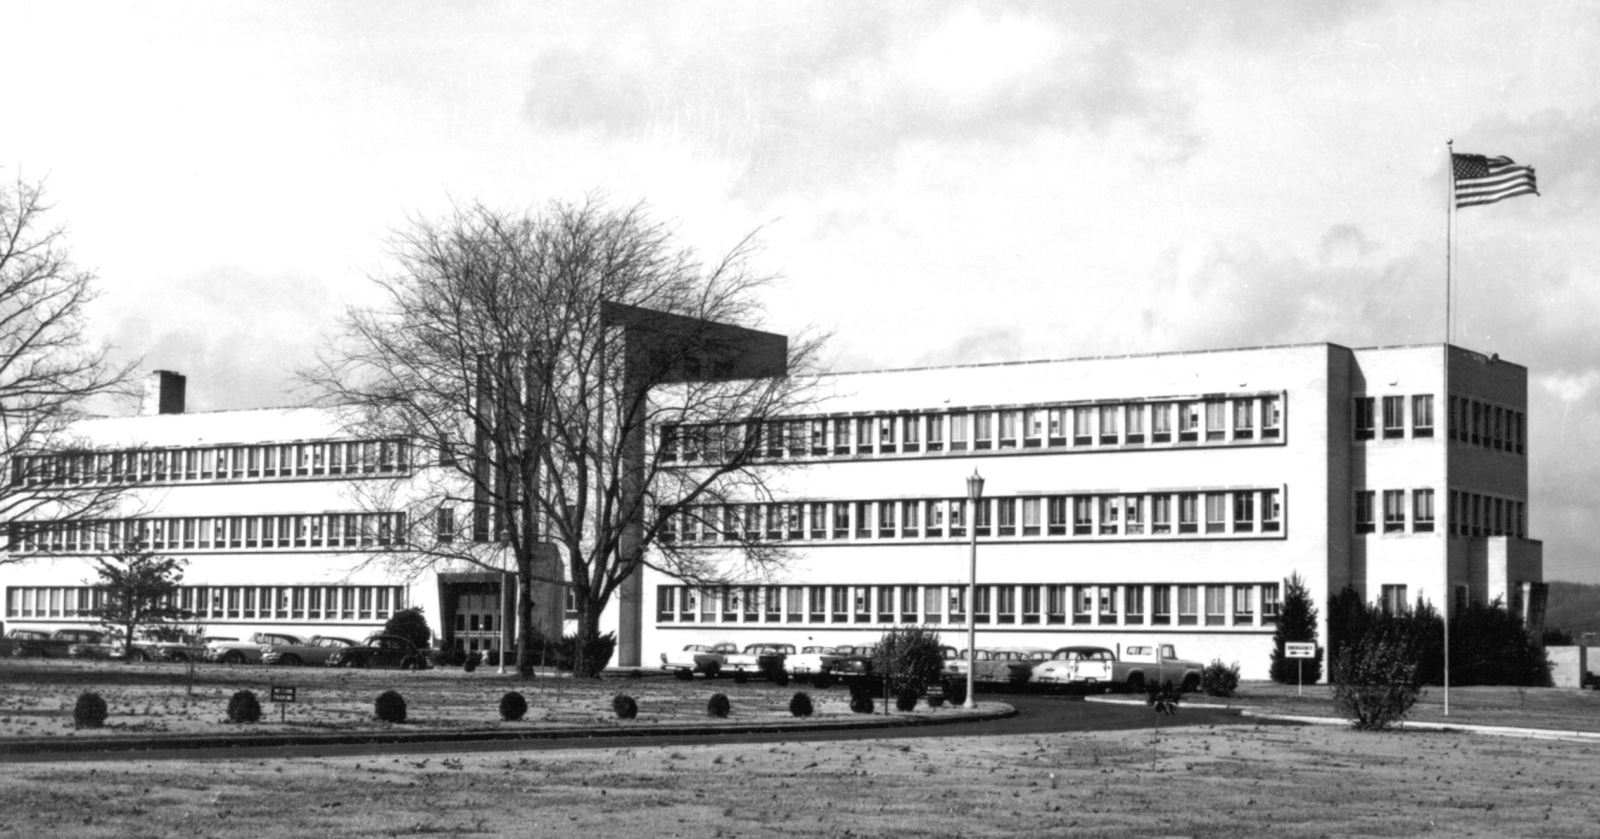 Maury Regional Medical Center in 1953